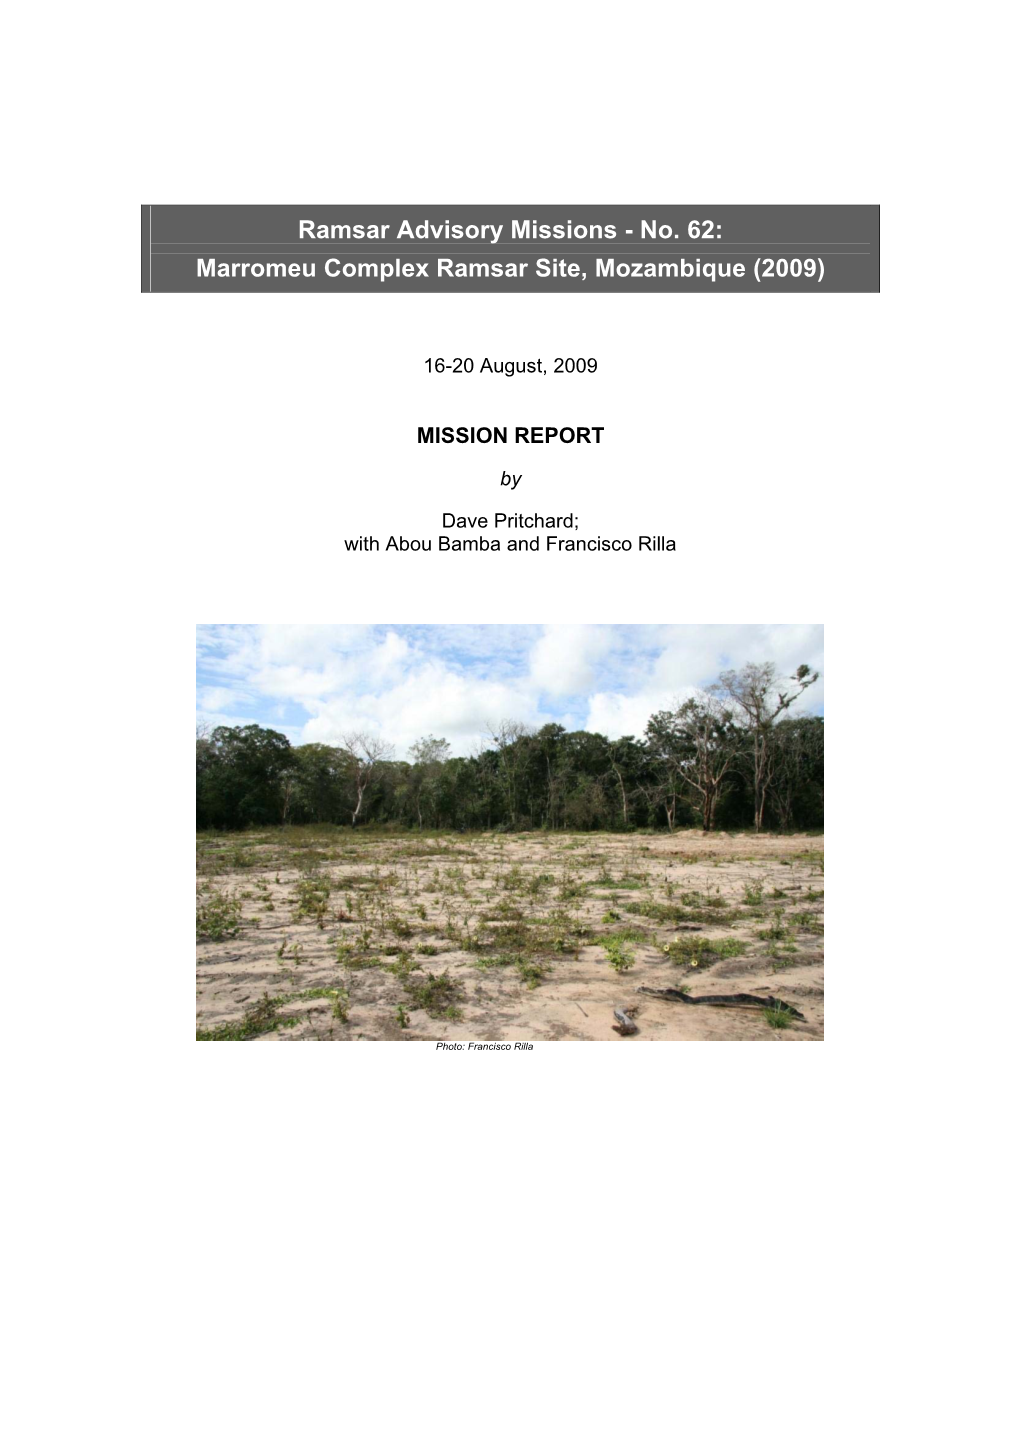 No. 62: Marromeu Complex Ramsar Site, Mozambique (2009)